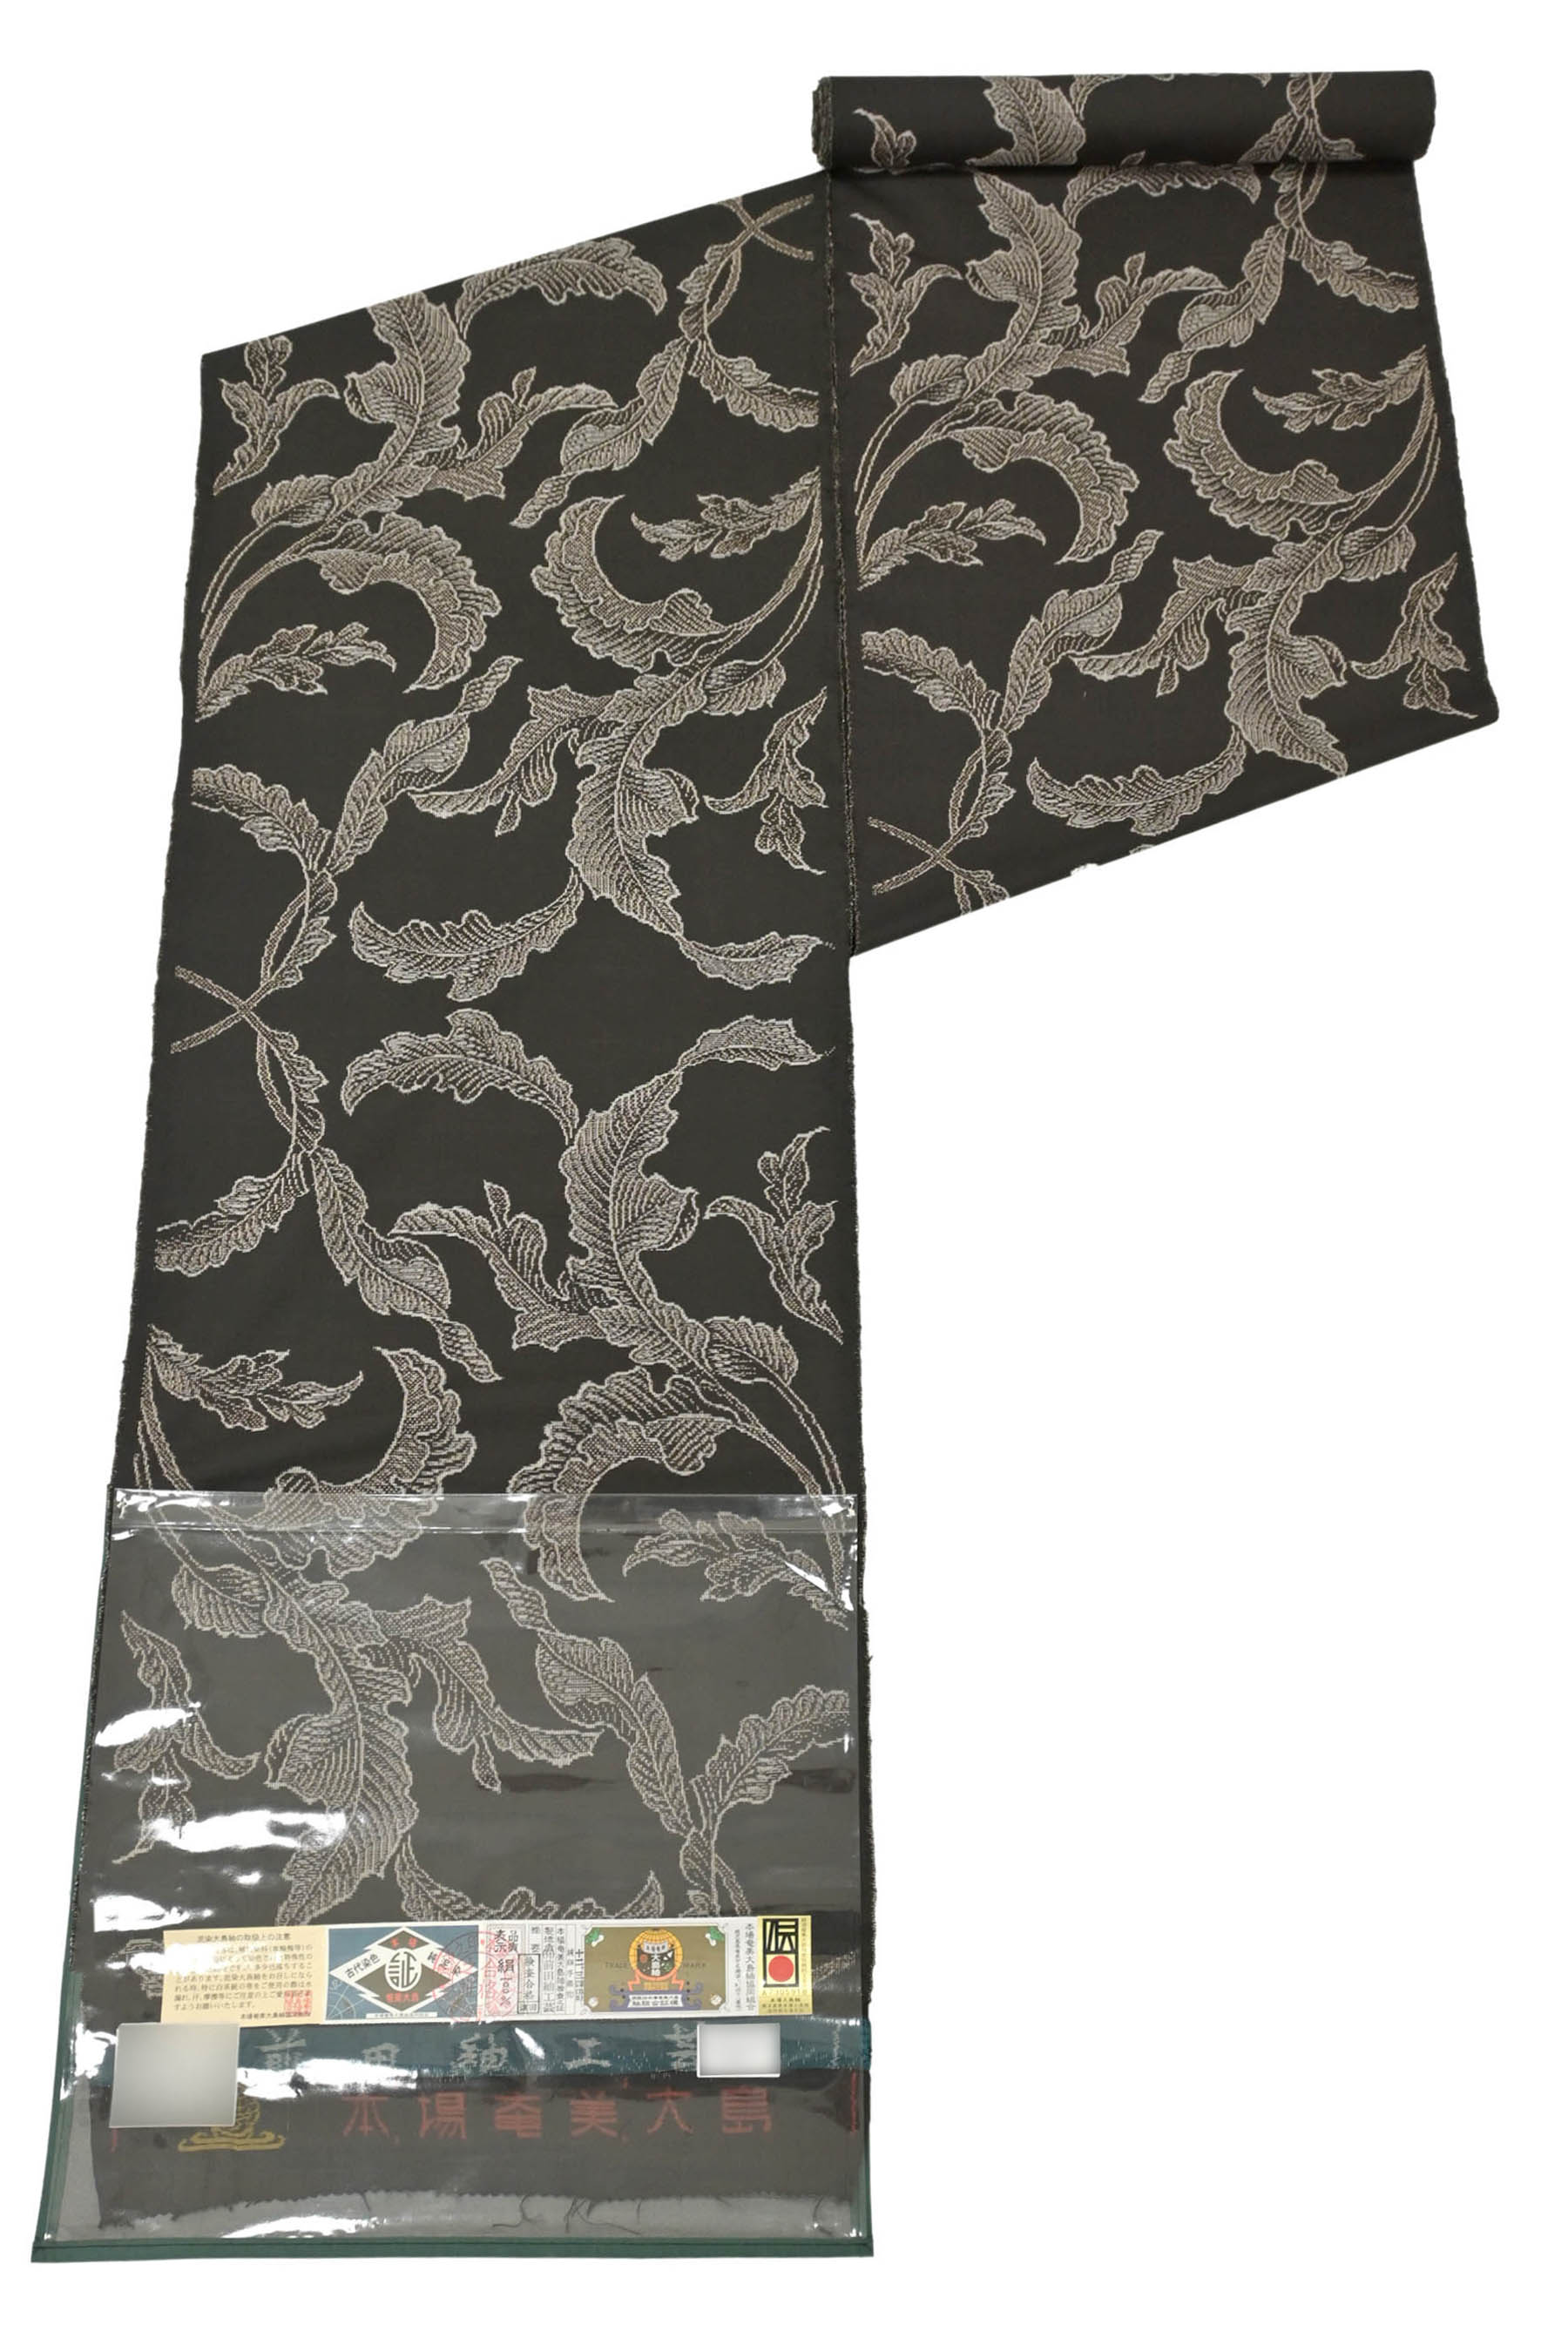 本場大島紬 通産大臣指定伝統的工芸品 古代染色 純泥染 正絹 反物幅385cm